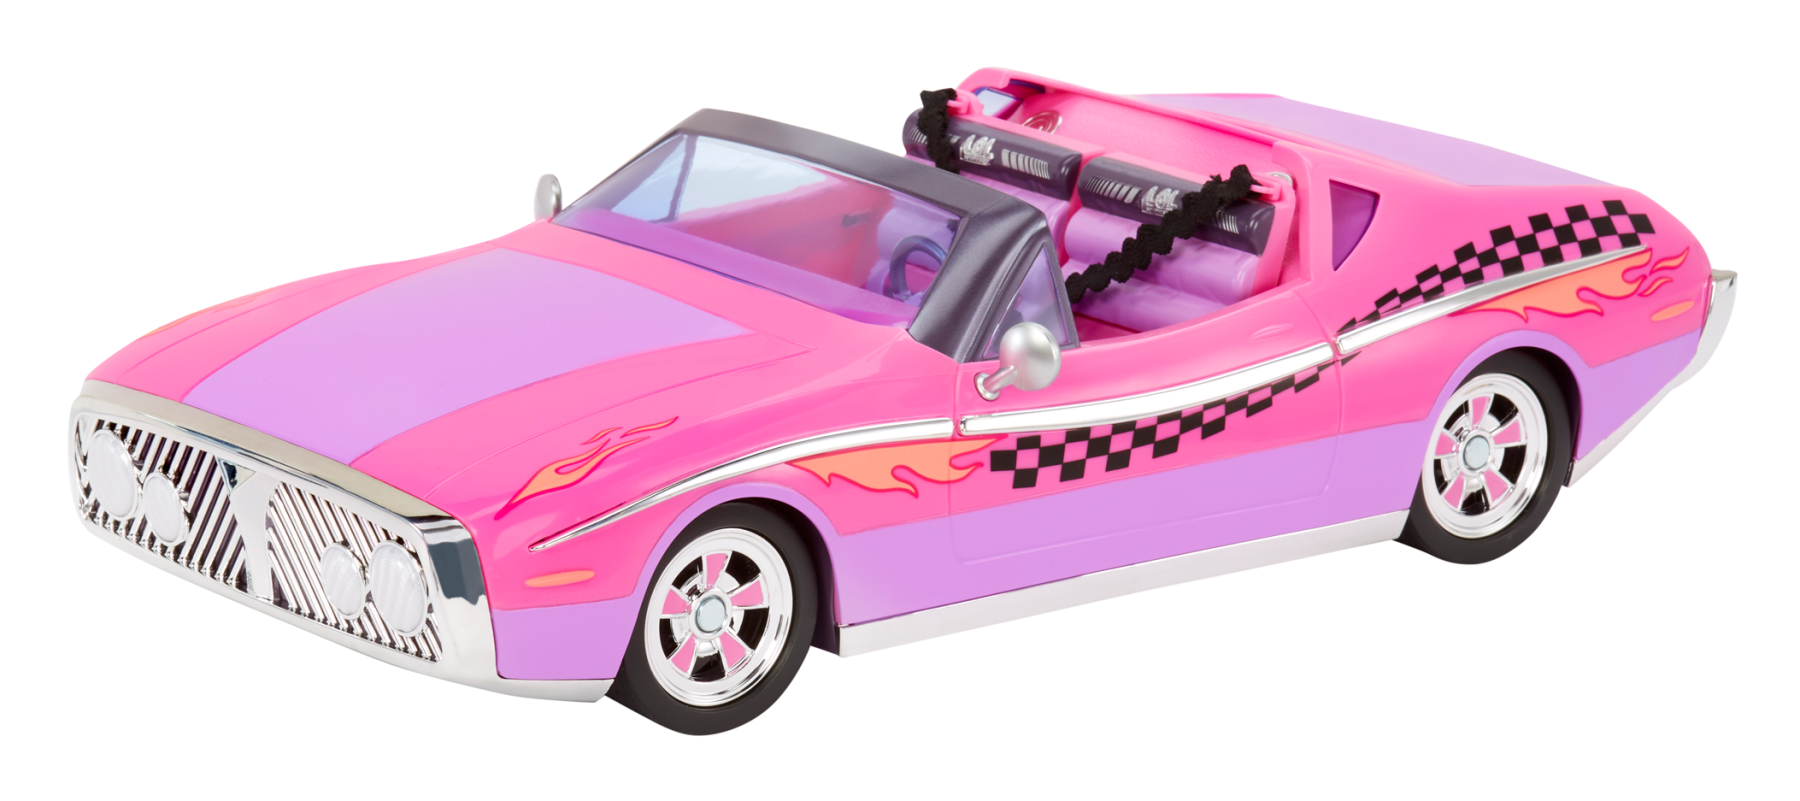 L.o.l. surprise! city cruiser - auto sportiva rosa e viola con caratteristiche favolose e un'esclusiva bambola beeps inclusa - LOL